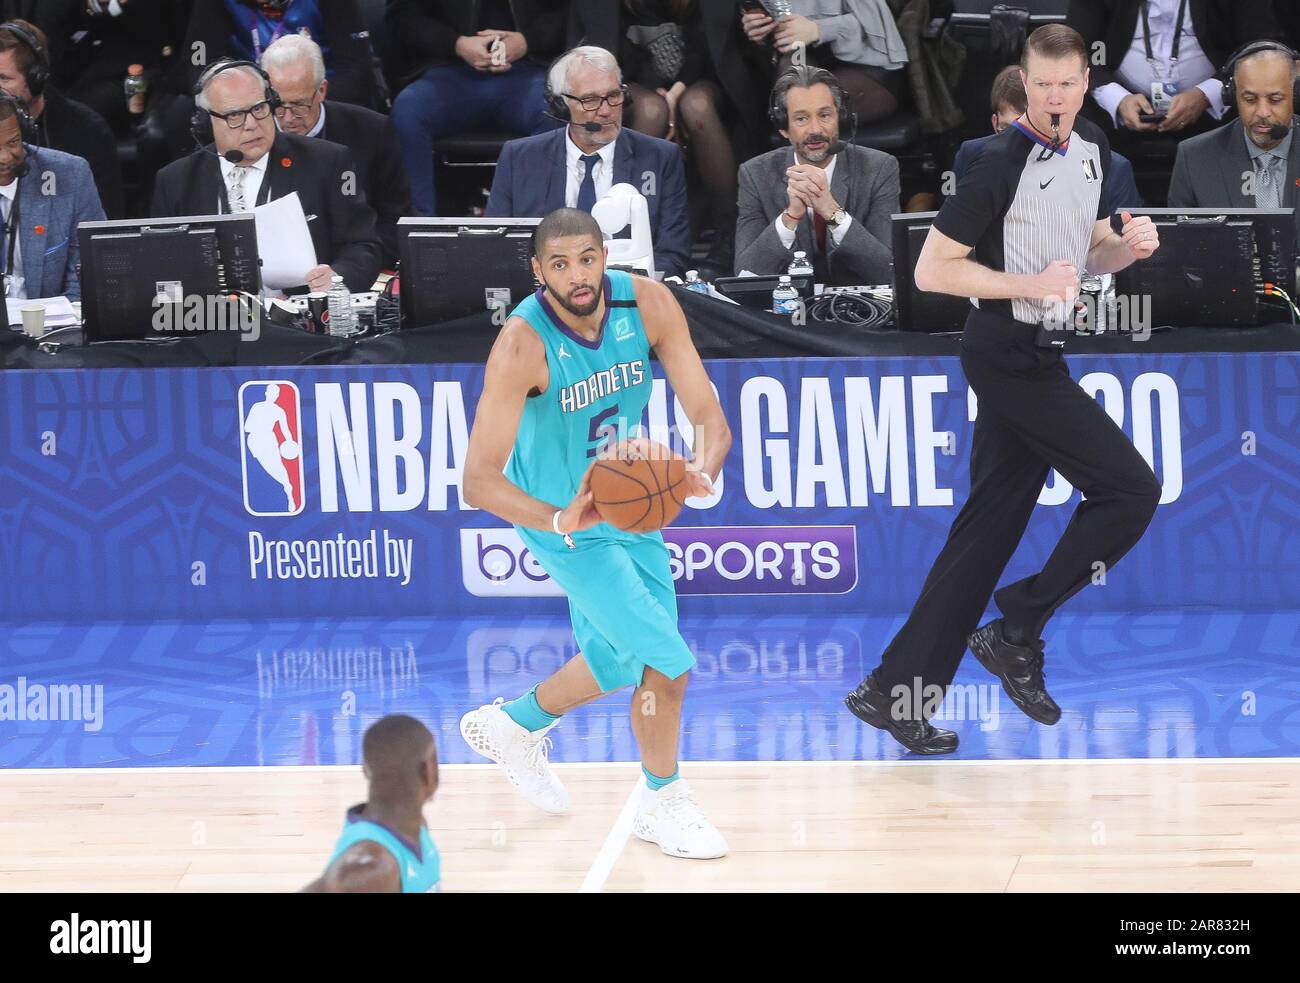 Nicolas Batum de Charlotte Hornets lors du match de basket-ball NBA Paris  Game 2020 entre Milwaukee Bucks et Charlotte Hornets le 24 janvier 2020 à  l'AccorHotels Arena de Paris, France - photo